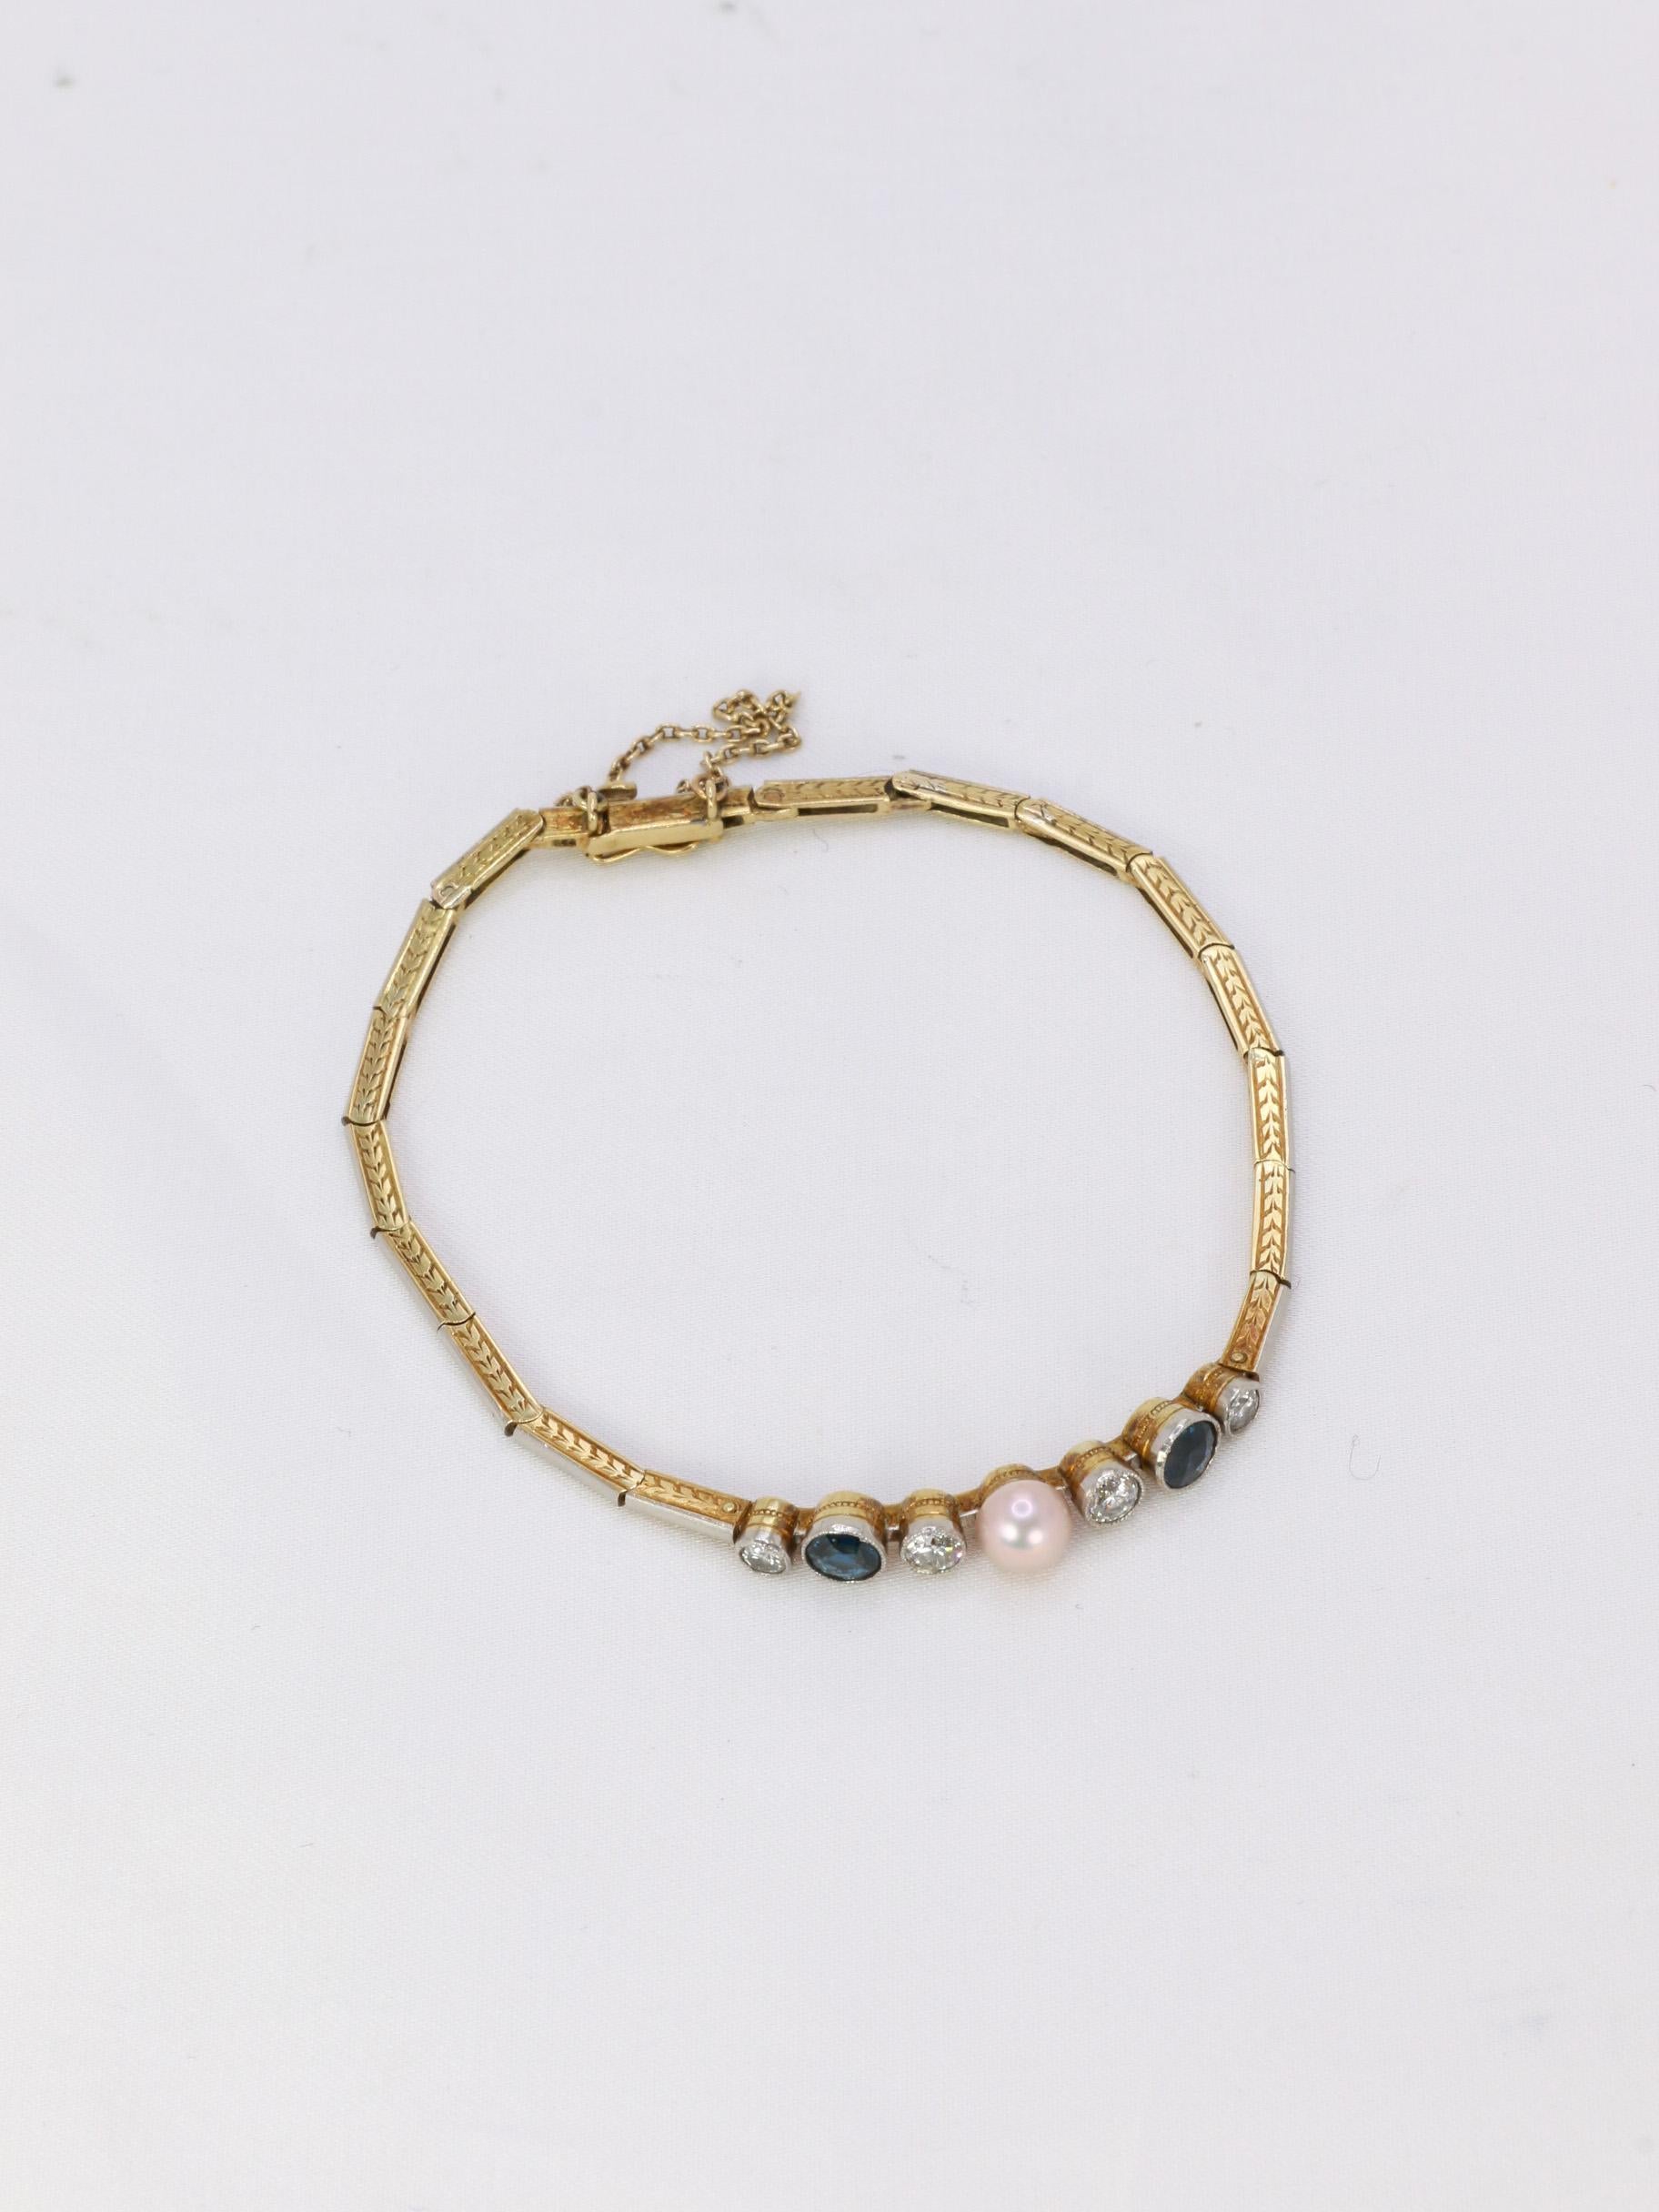 Old Mine Cut Bracelet Belle Epoque en or, perle fine bouton rosée, diamants taille ancienne e For Sale